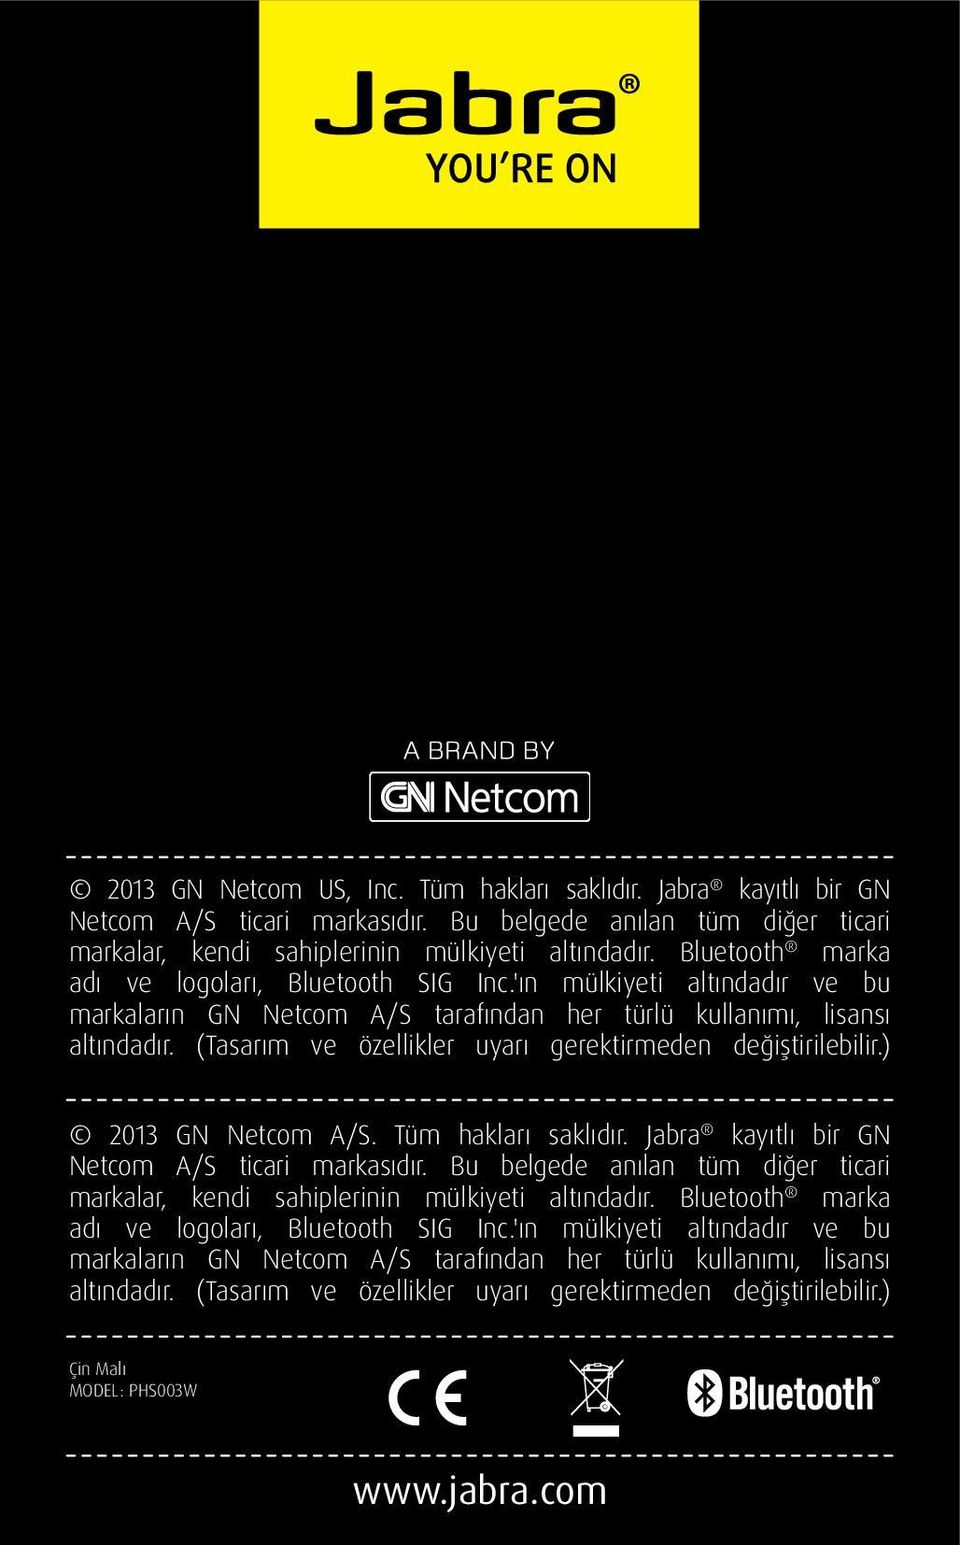 (Tasarım ve özellikler uyarı gerektirmeden değiştirilebilir.) 2013 GN Netcom A/S. Tüm hakları saklıdır. Jabra kayıtlı bir GN Netcom A/S ticari markasıdır.